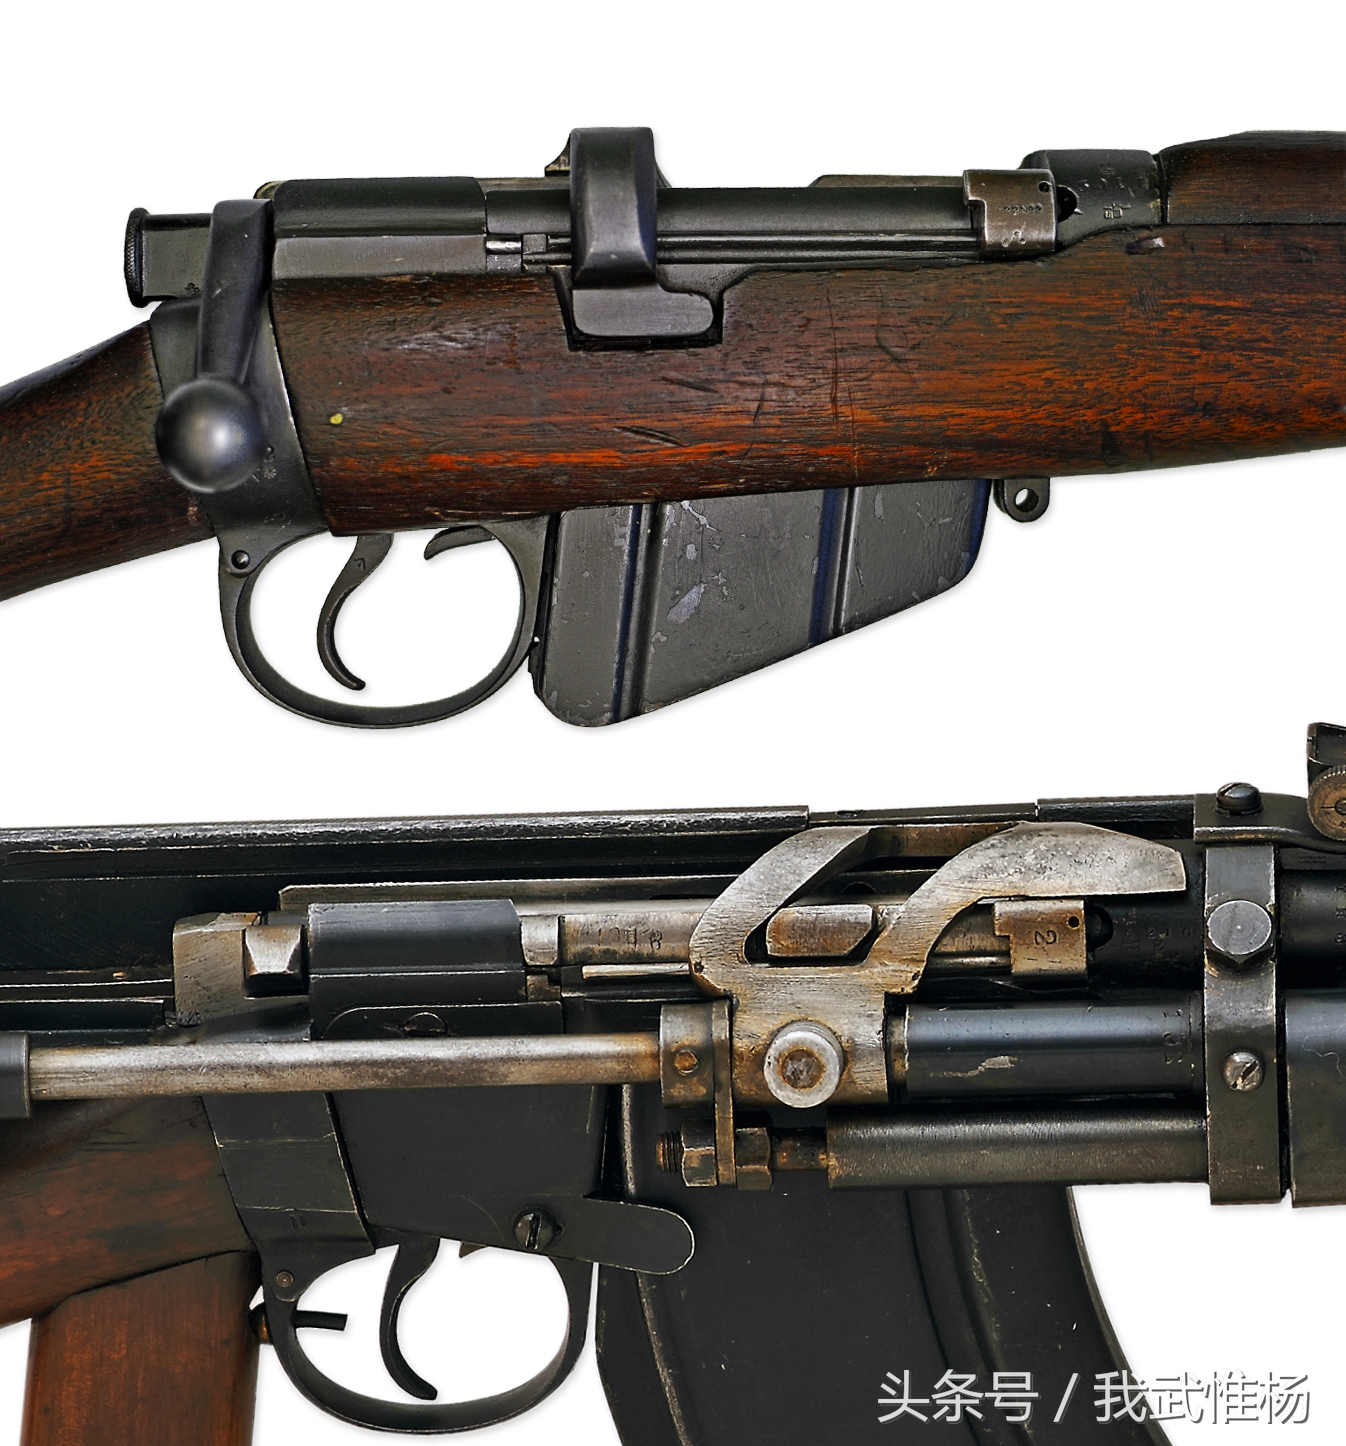 新西兰人菲利普·查尔顿在1941年用smle步枪改装出来的自动装填试验型